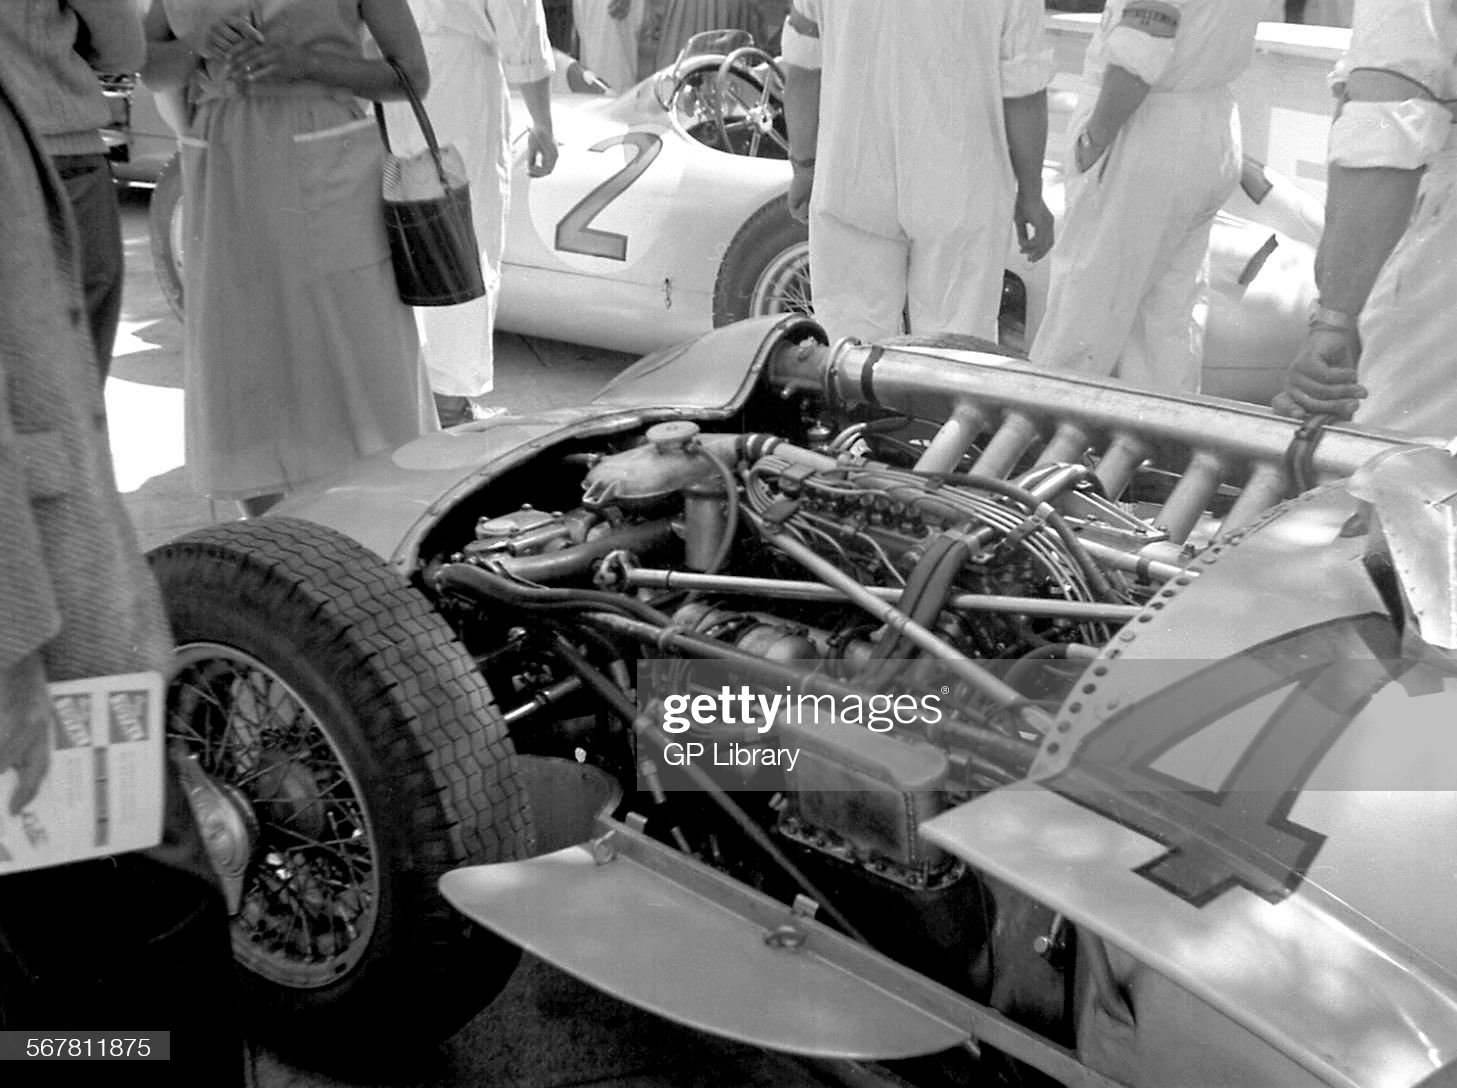 A racing car at the 1955 Monaco Grand Prix.